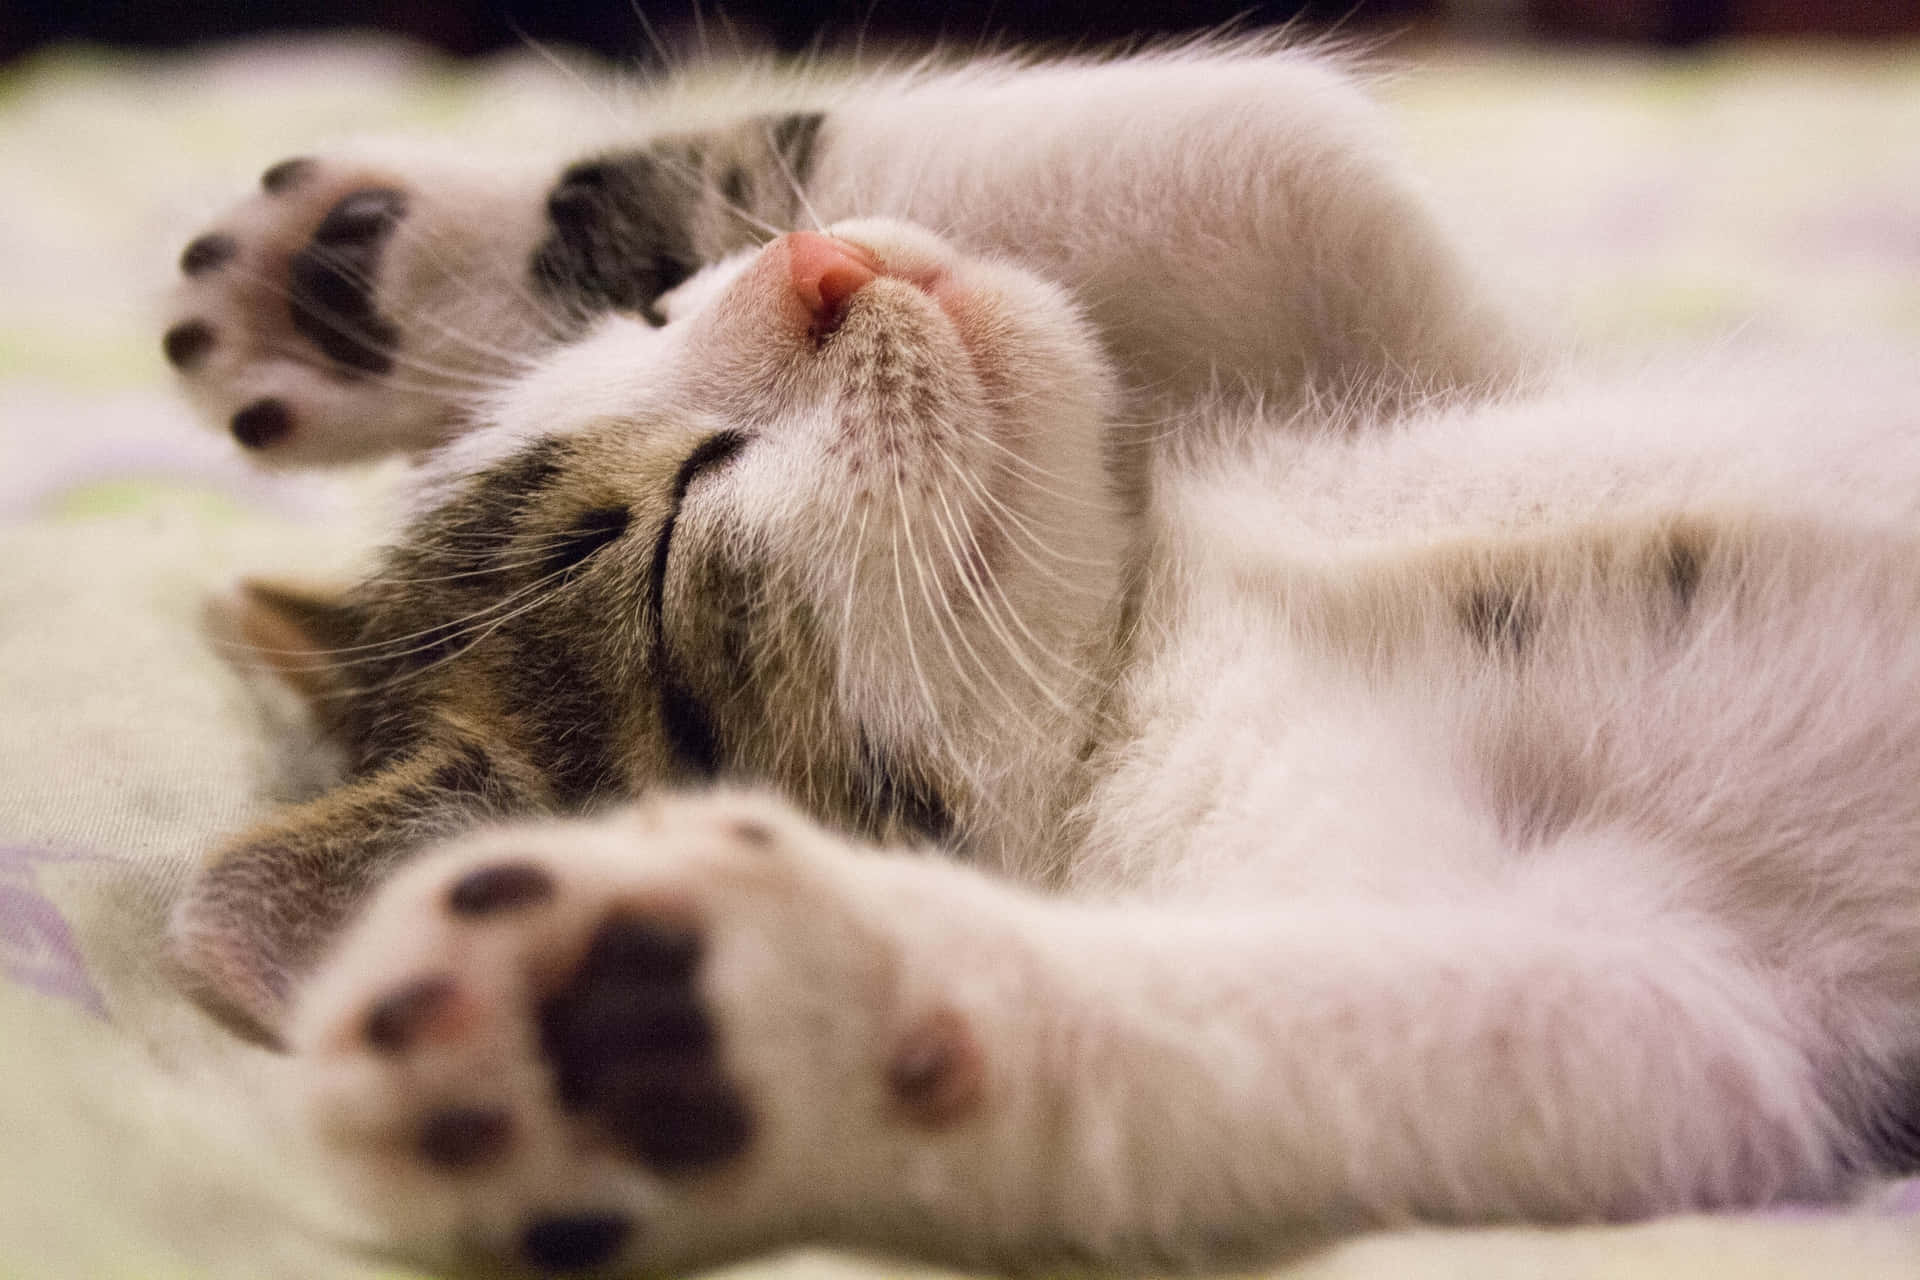 Sleeping Baby Cute Cat PFP Wallpaper